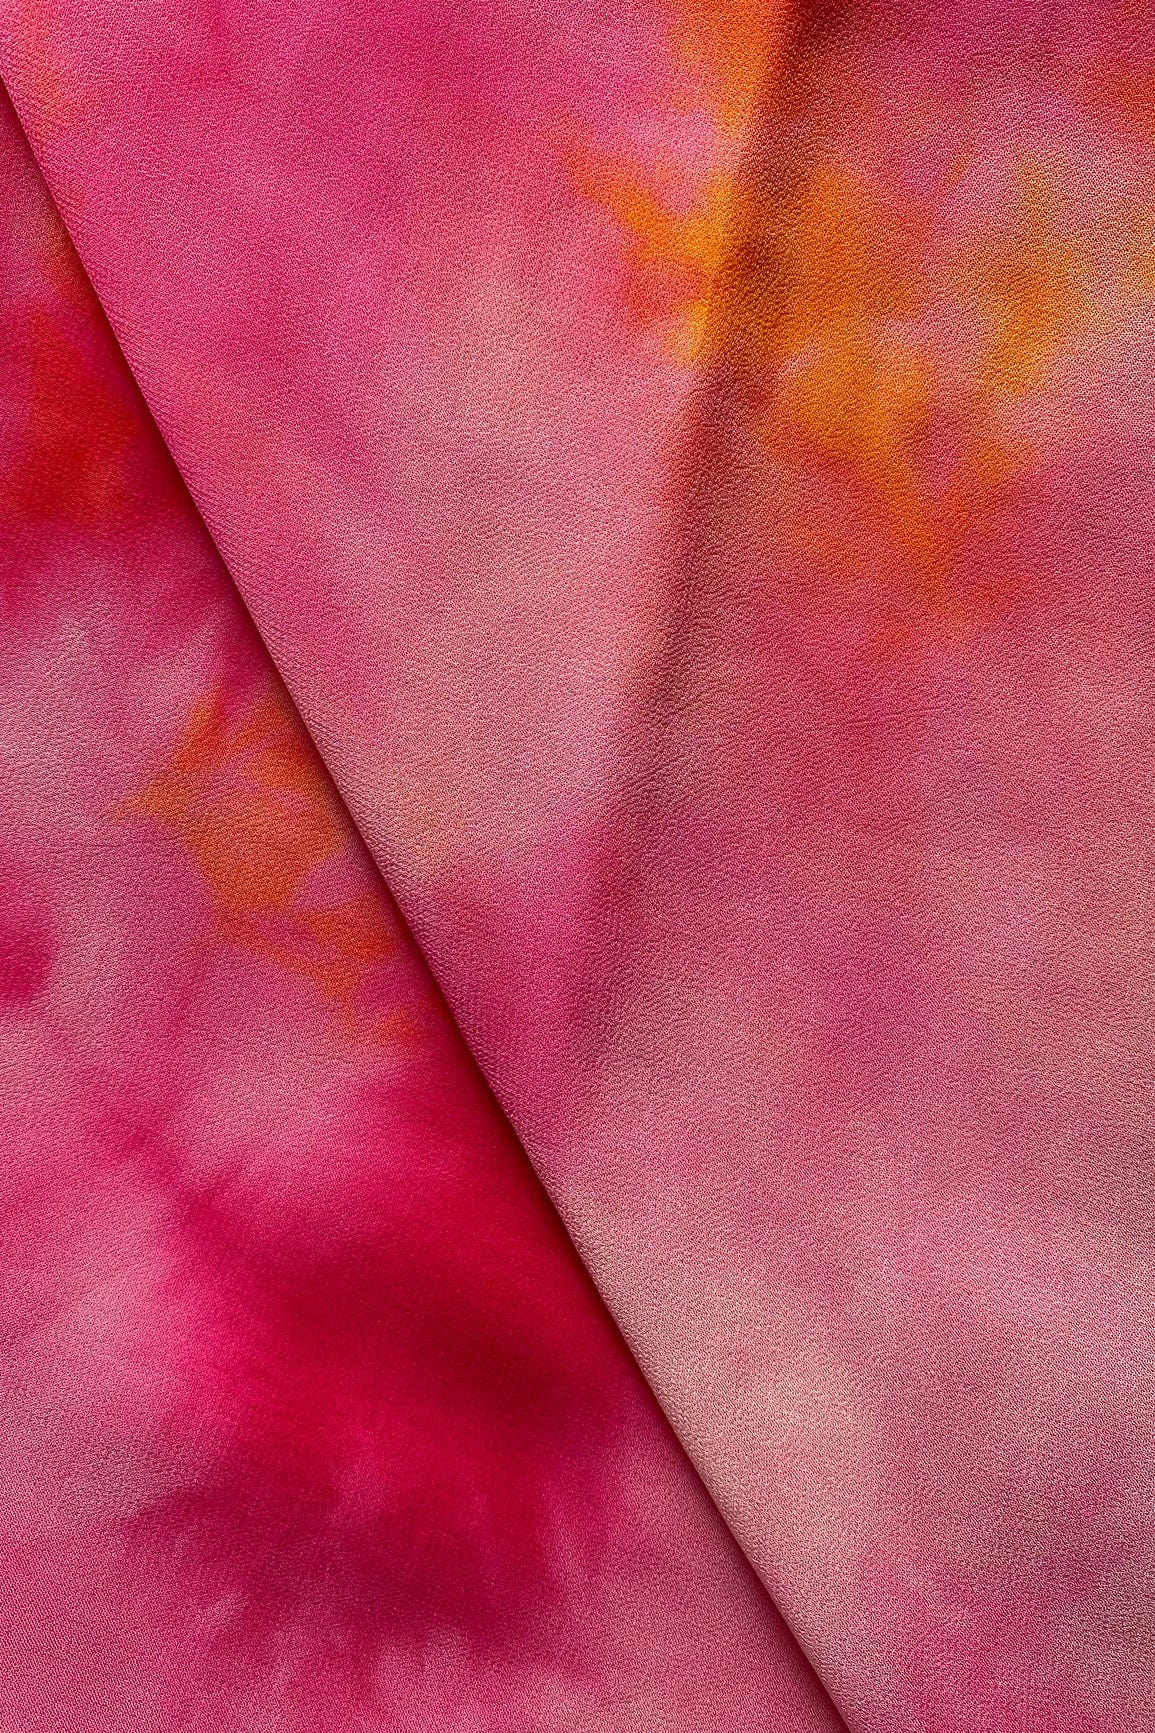 doeraa LEHENGA SET Pink And Yellow Unstitched Lehenga Set Fabric (3 Piece)